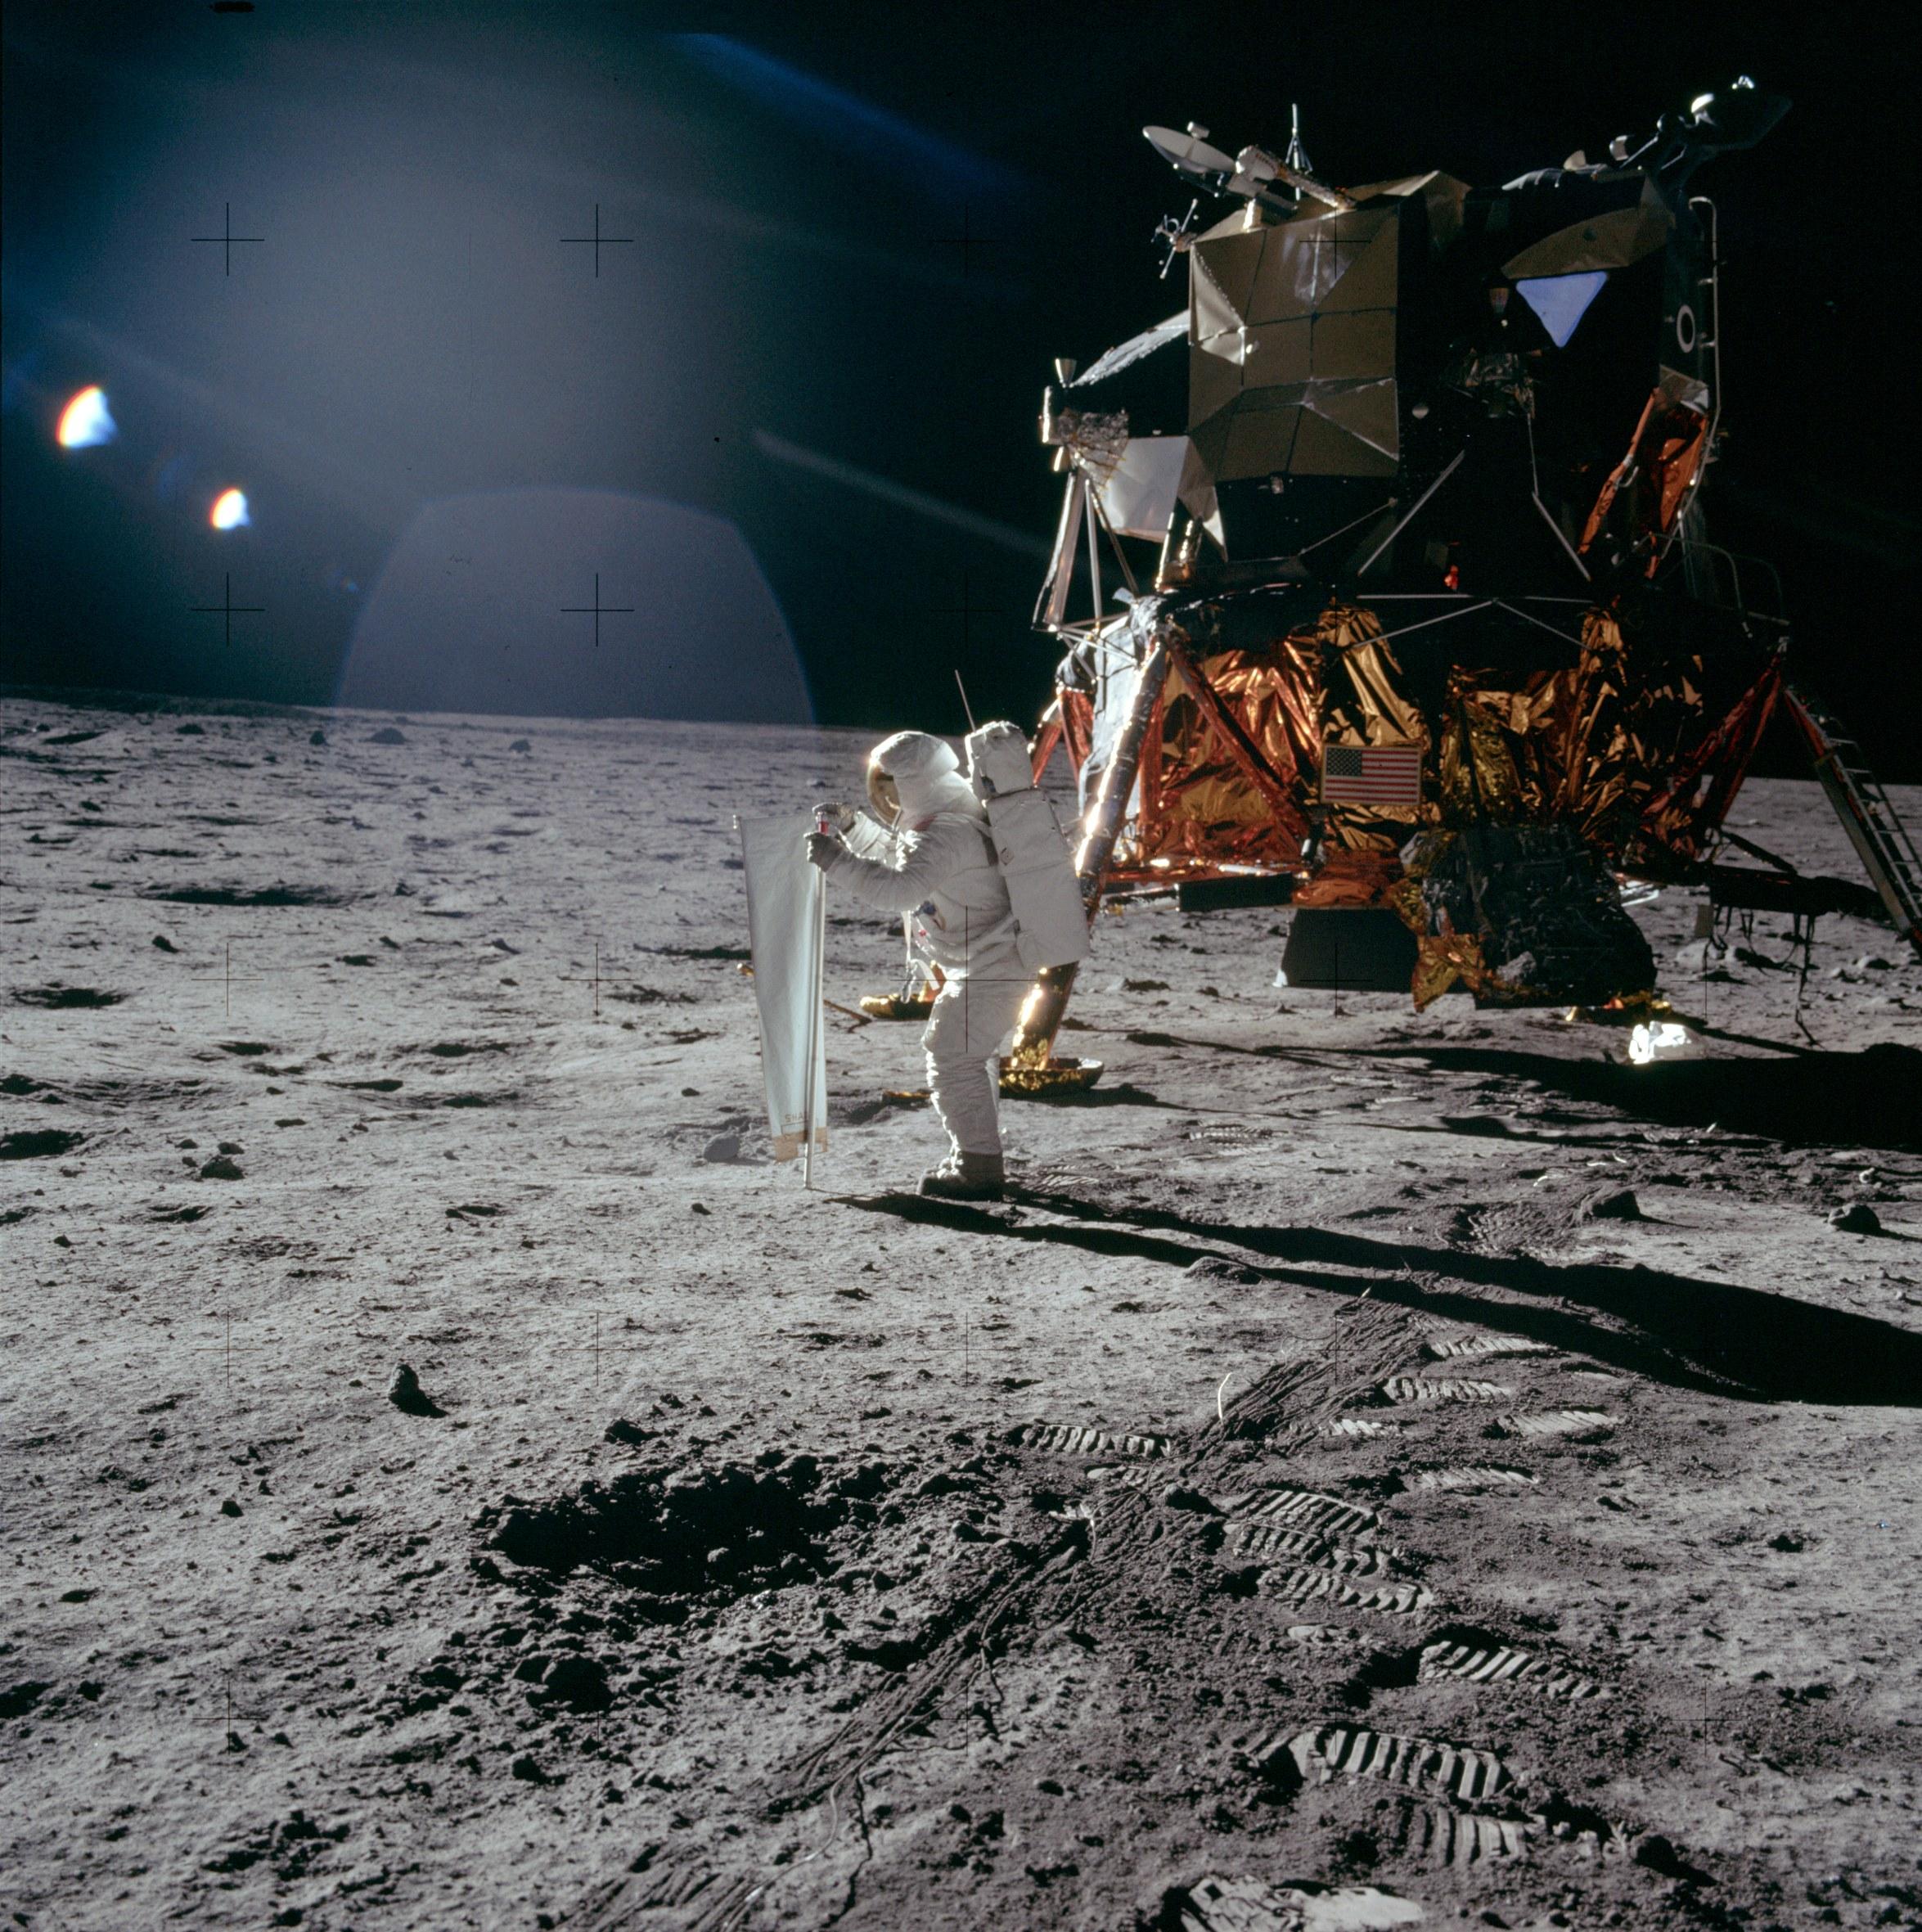 رائد فضاء ينشر طبقة بينما تلمع أشعّة الشمس. تظهر خلفه وحدة قمريّة في حين تظهر أثار دعسات الأحذية القمريّة تحته.